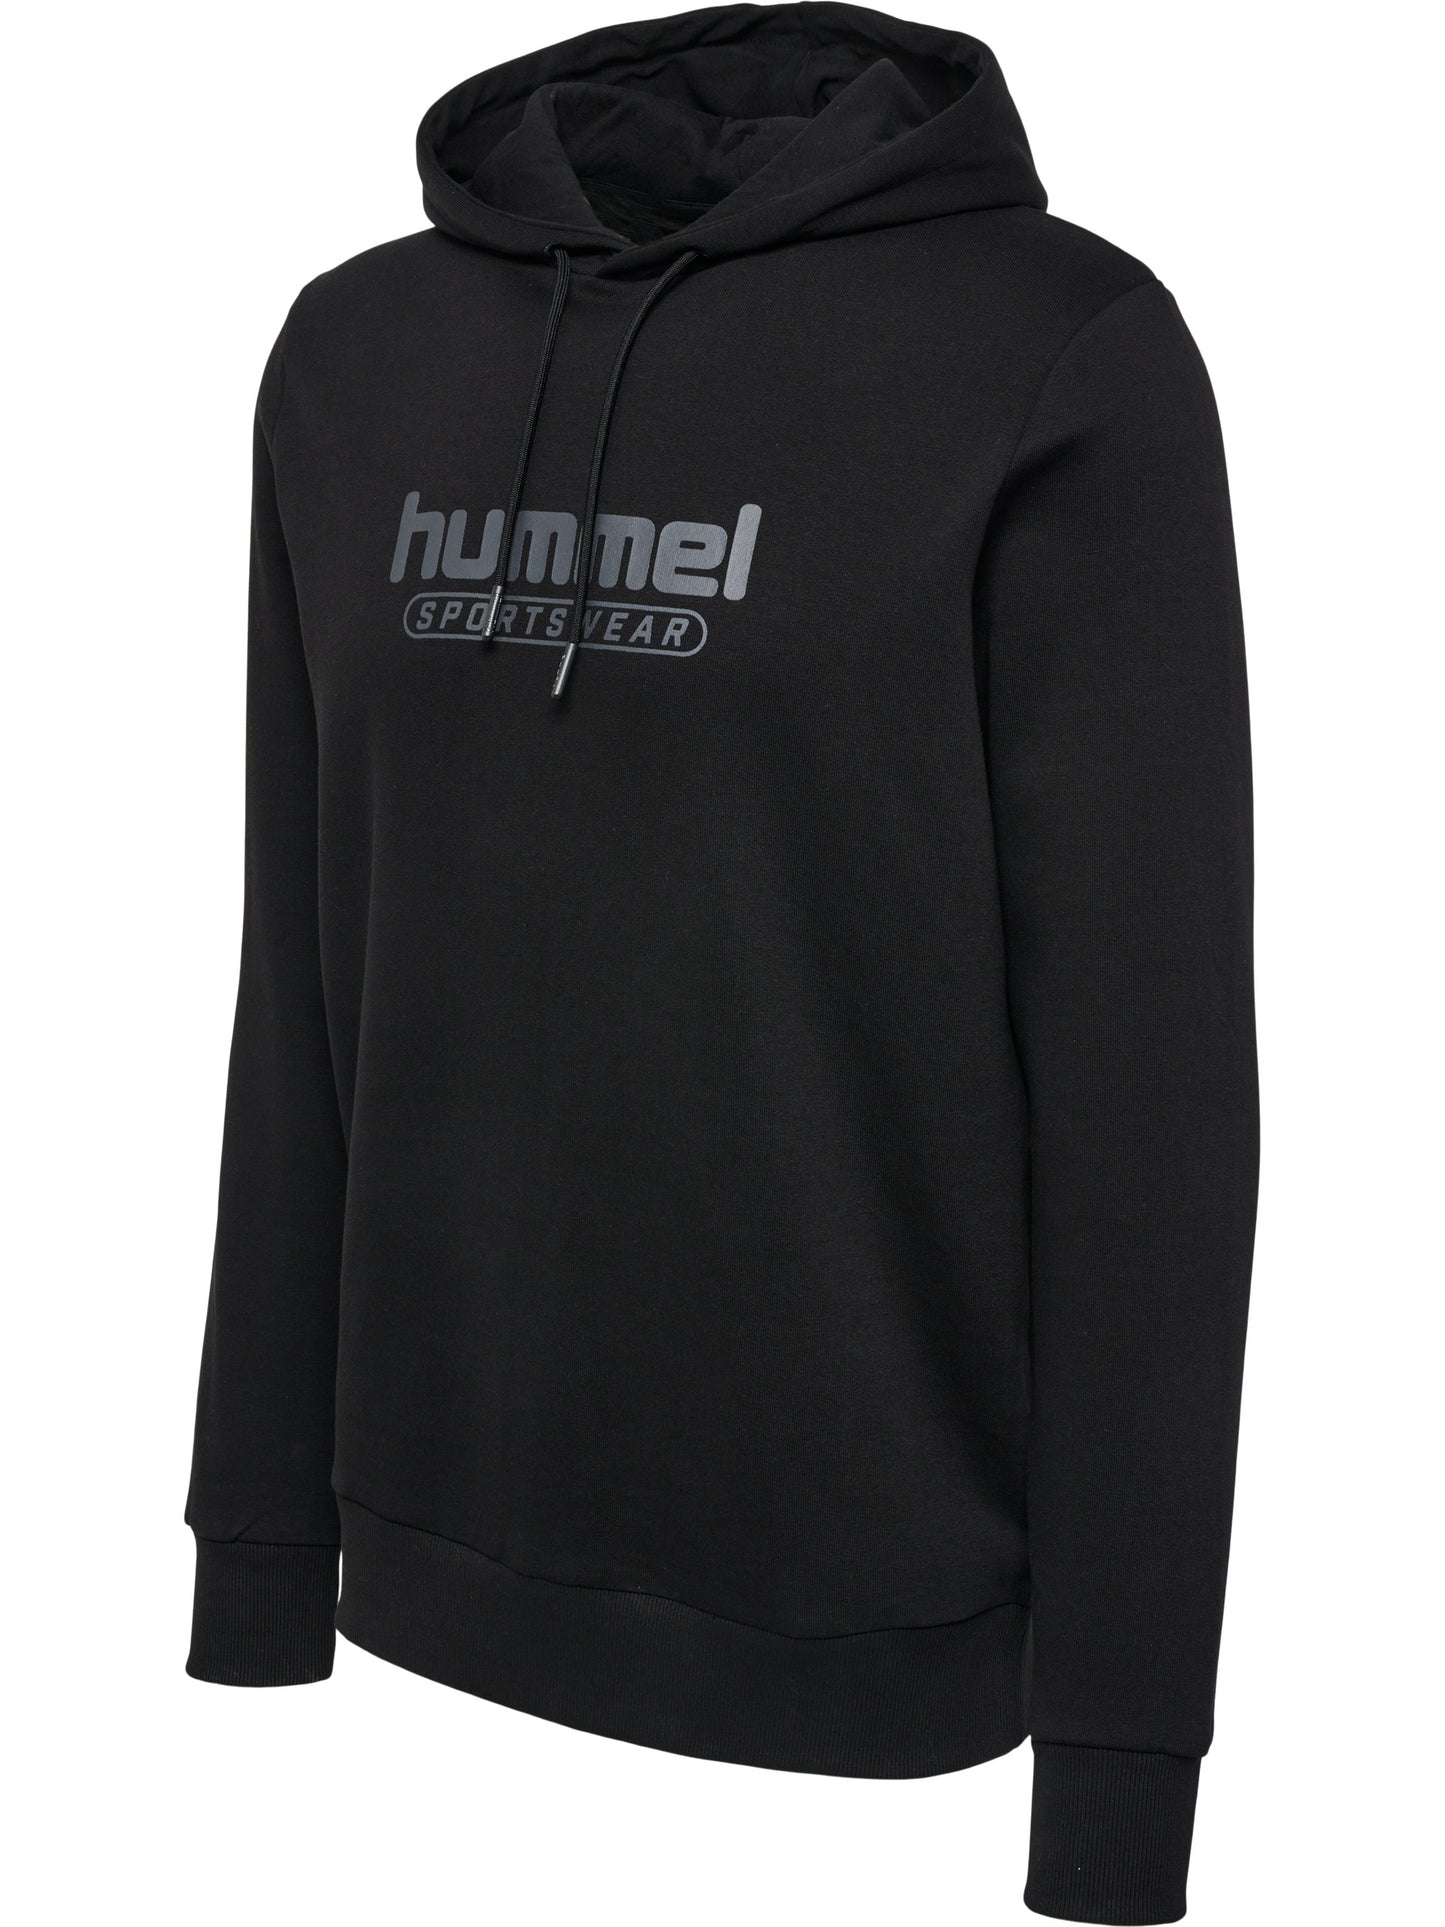 OUTLET - Smart hoodie fra Hummel - hmlBOOSTER HOODIE